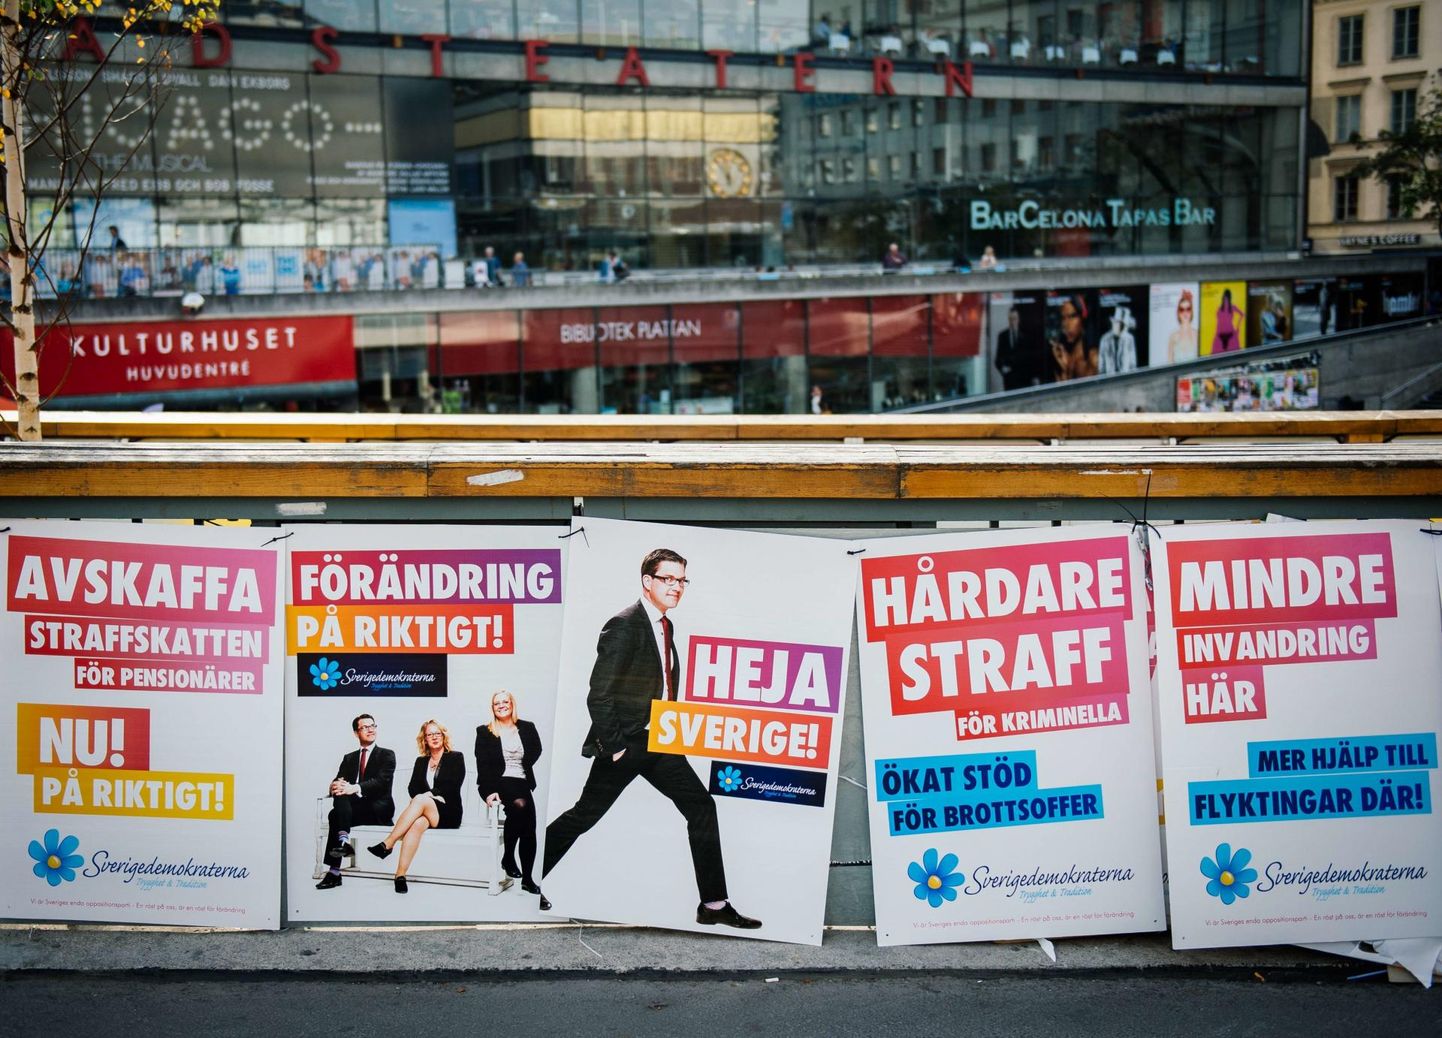 Hääled on loetud, kuid Rootsi uue valitsuse asjus mingit selgust ei paista.